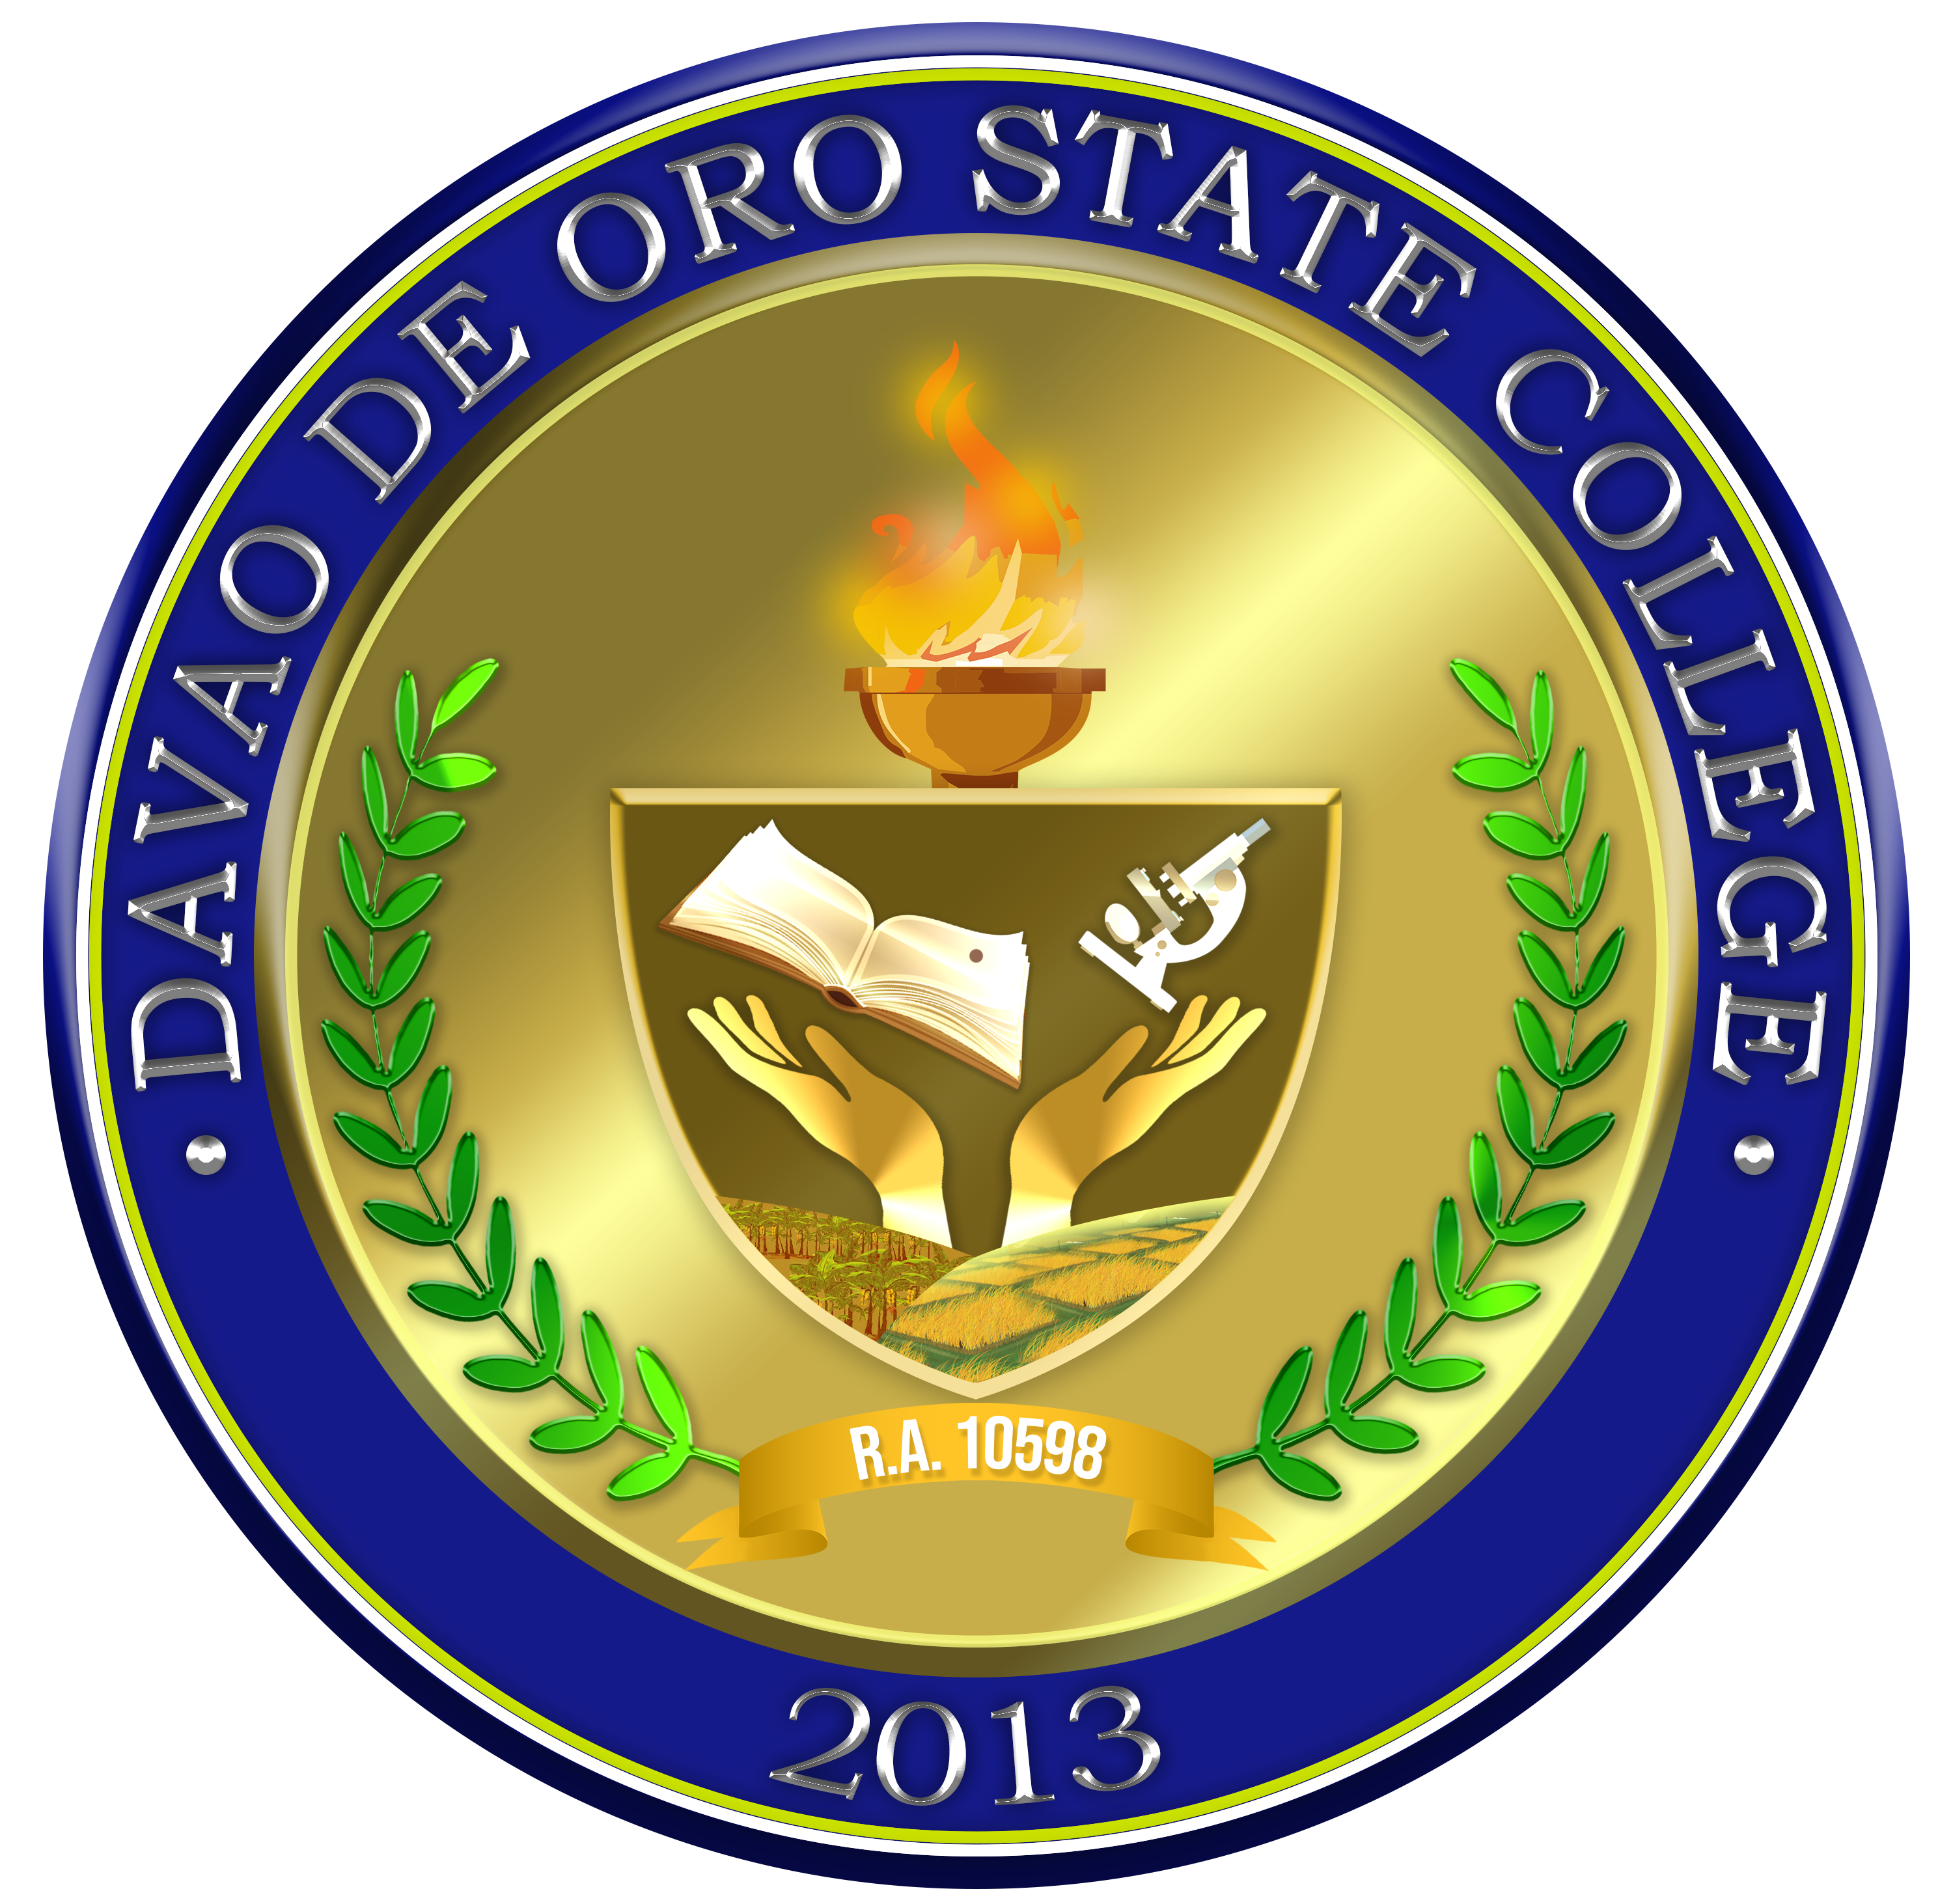 Davao De Oro State College